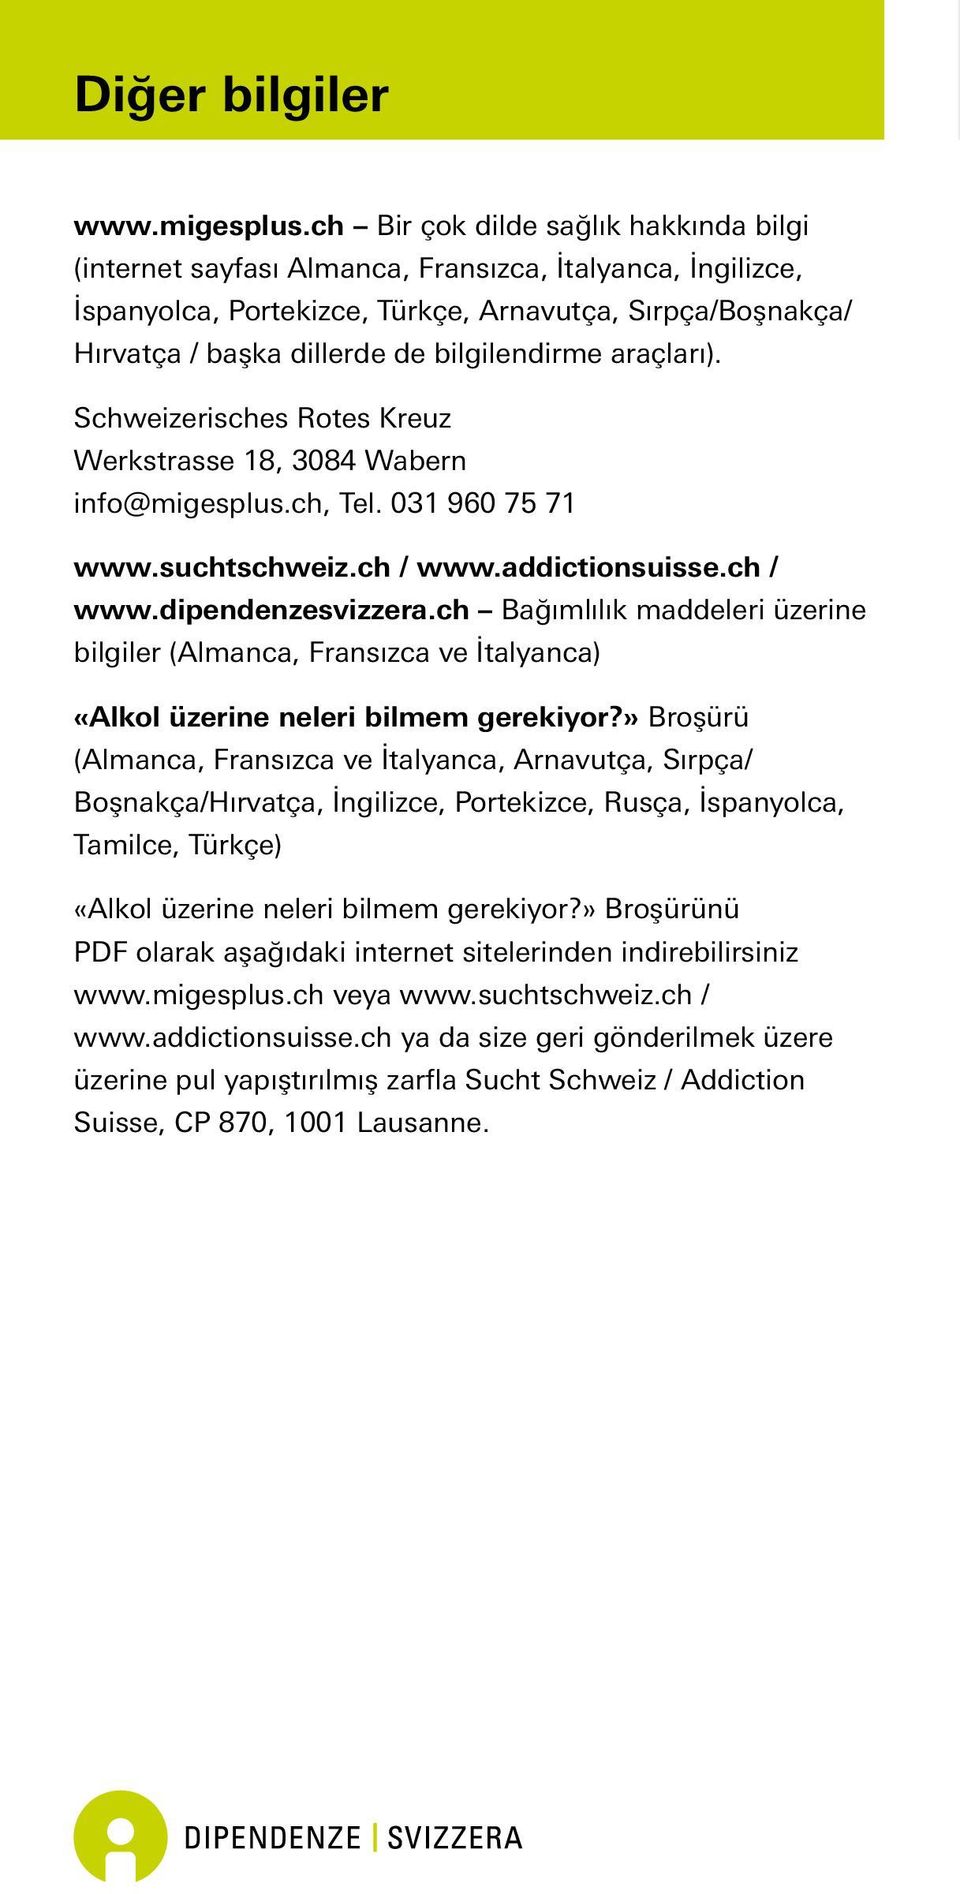 bilgilendirme araçları). Schweizerisches Rotes Kreuz Werkstrasse 18, 3084 Wabern info@migesplus.ch, Tel. 031 960 75 71 www.suchtschweiz.ch / www.addictionsuisse.ch / www.dipendenzesvizzera.